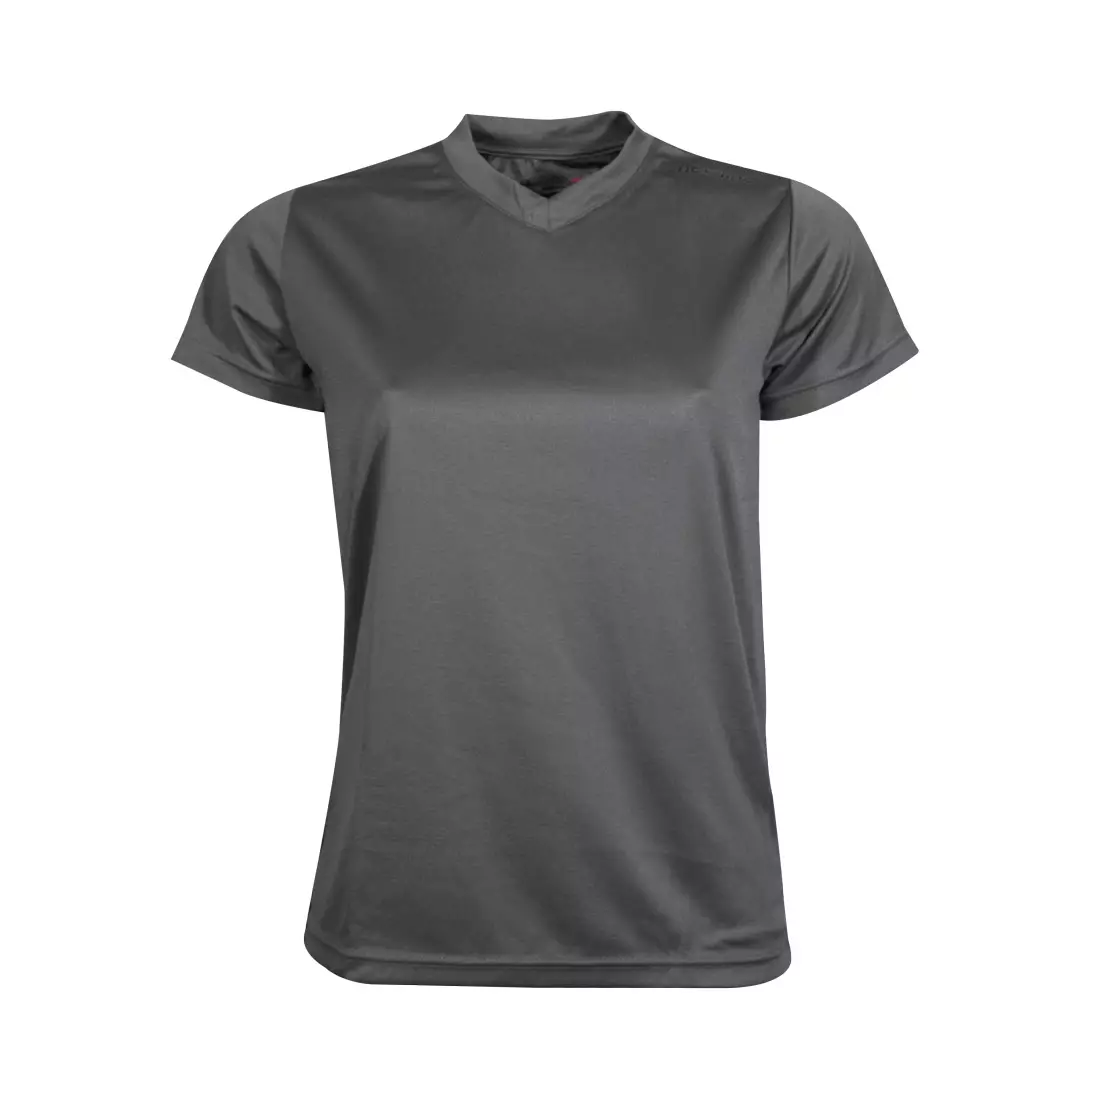 NEWLINE BASE COOL T-SHIRT - women's running T-shirt 13614-083